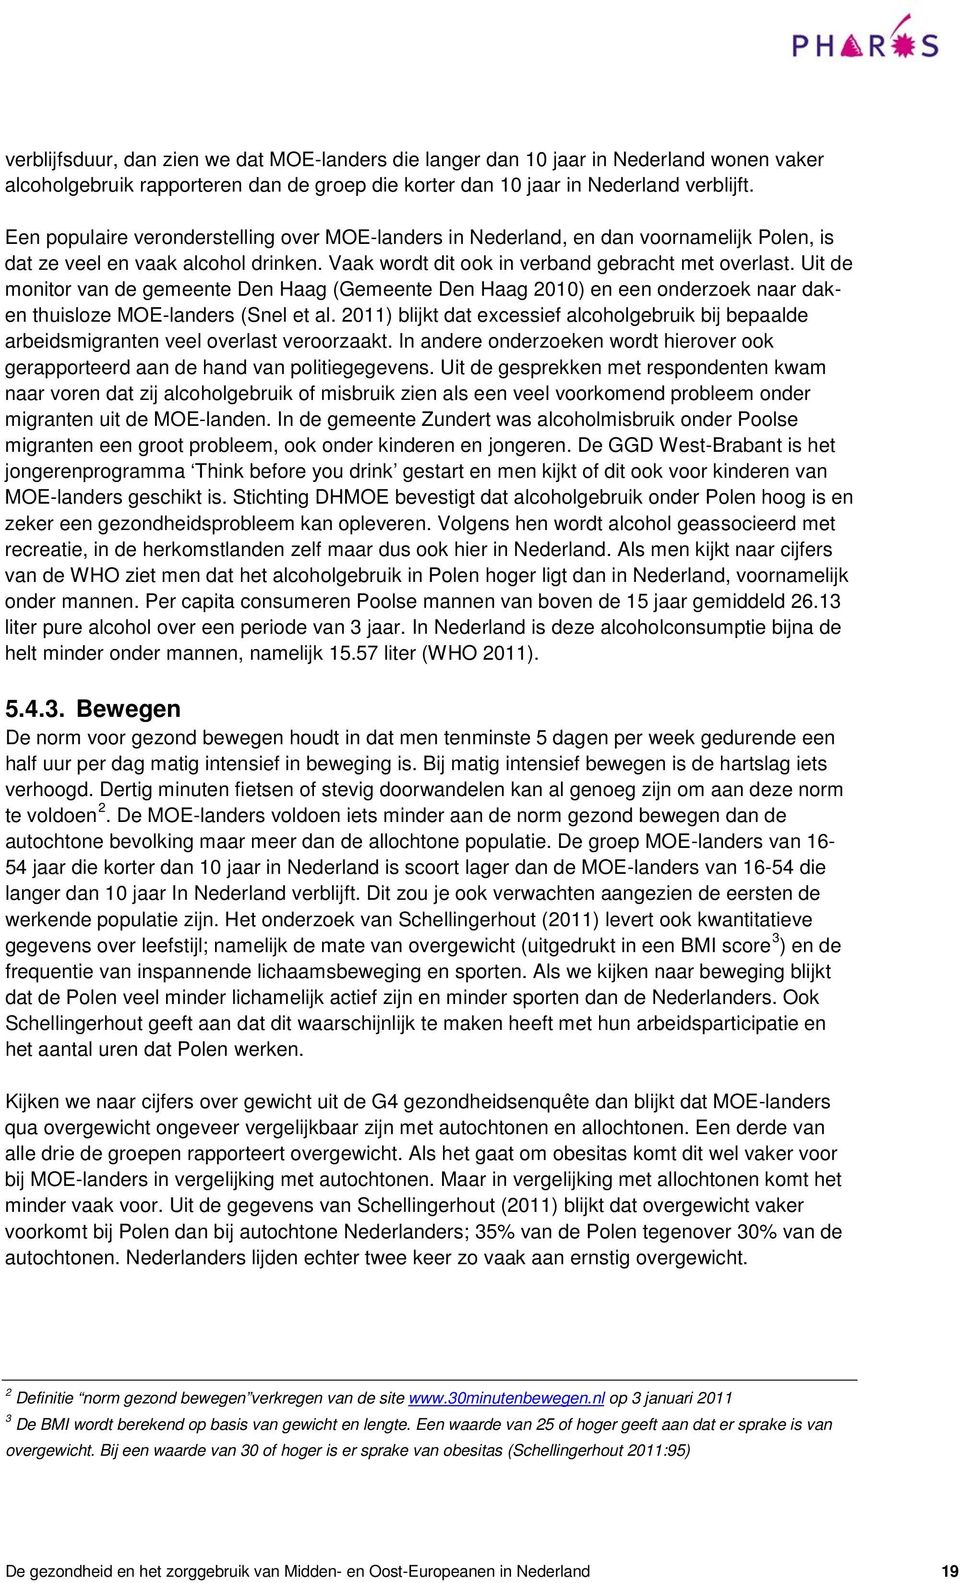 Uit de monitor van de gemeente Den Haag (Gemeente Den Haag 2010) en een onderzoek naar daken thuisloze MOE-landers (Snel et al.